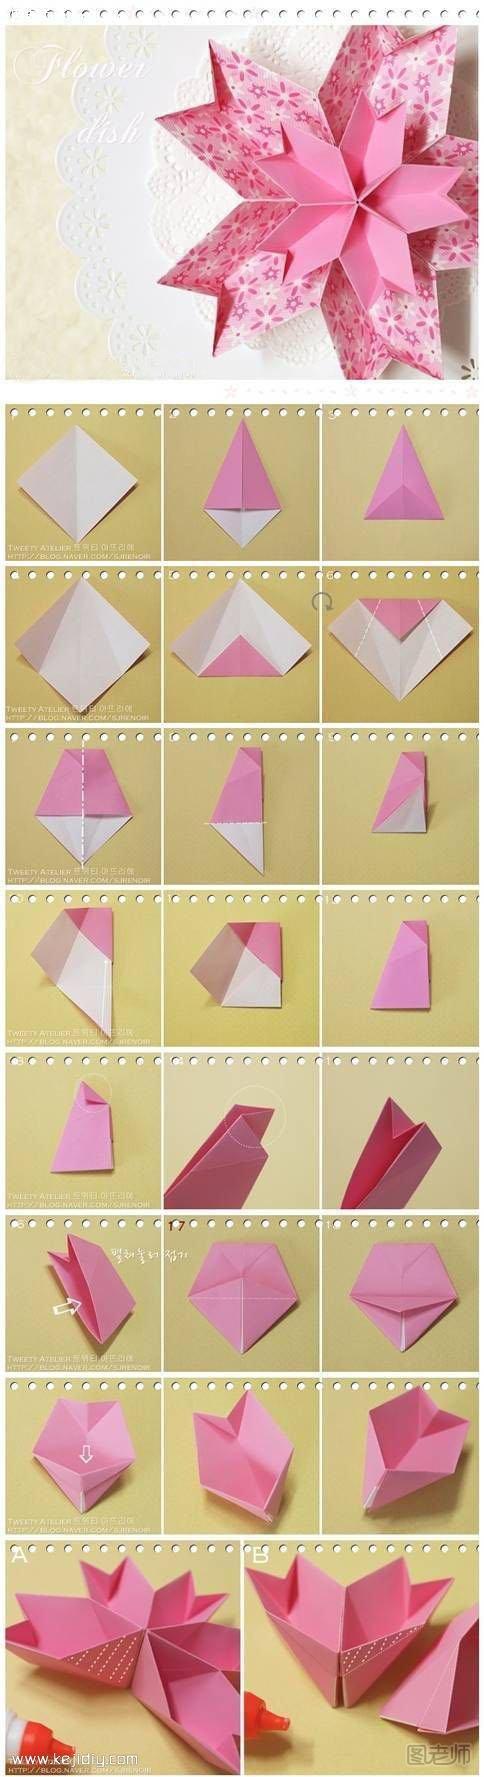 卡纸折纸漂亮实用的果盘手工制作教程- www.kejidiy.com